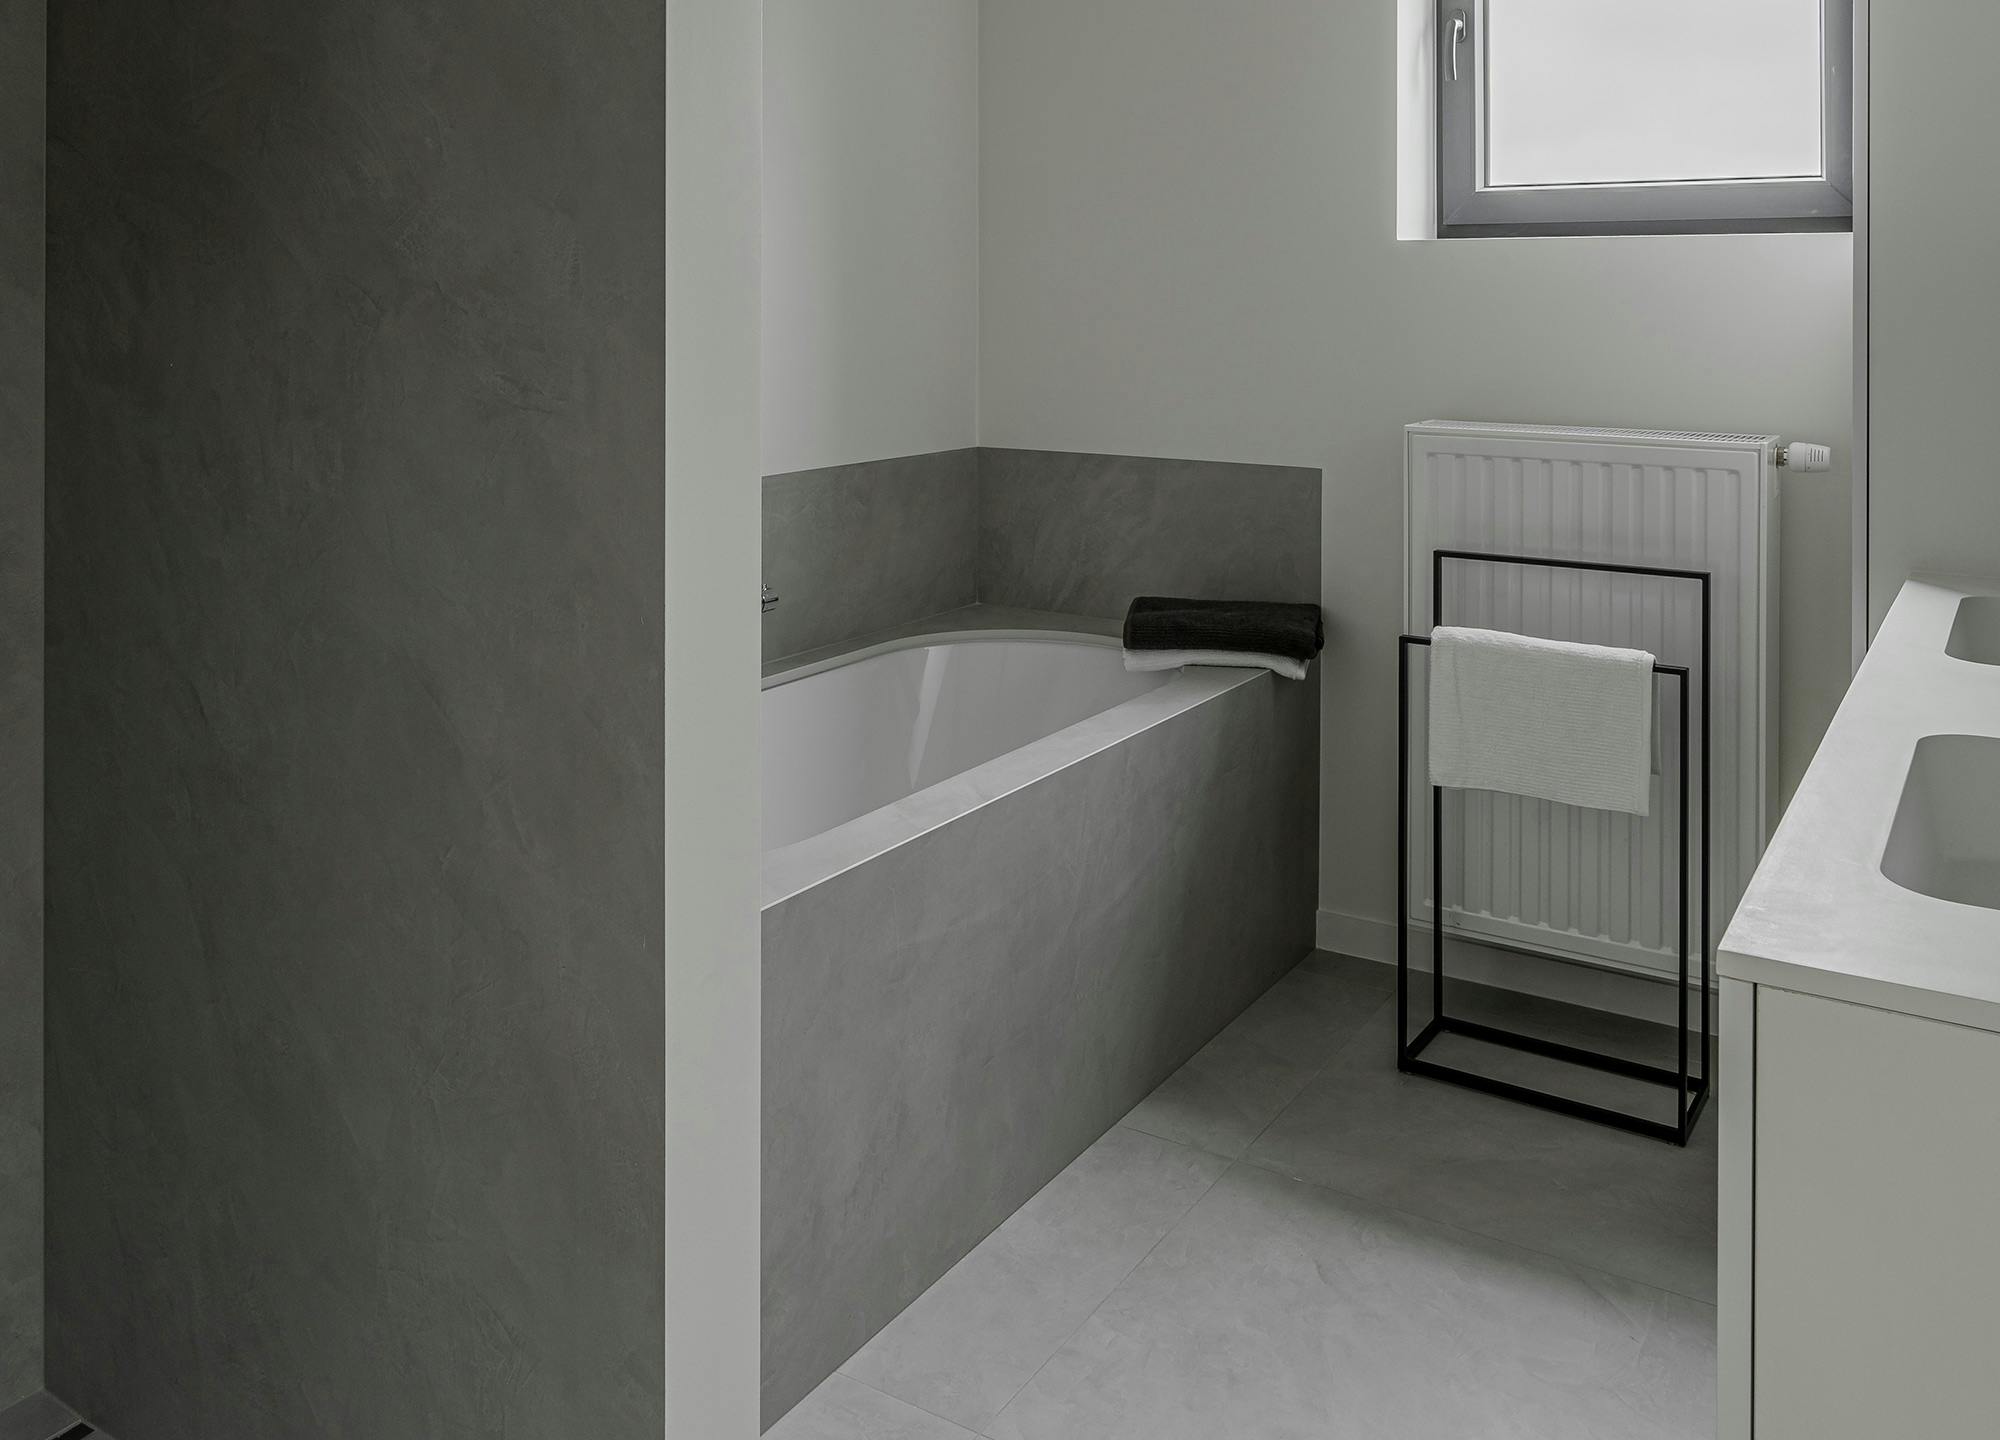 Bildnummer 39 des aktuellen Abschnitts von Two full-fledged bathrooms covered by Dekton at Ben Adams von Cosentino Deutschland